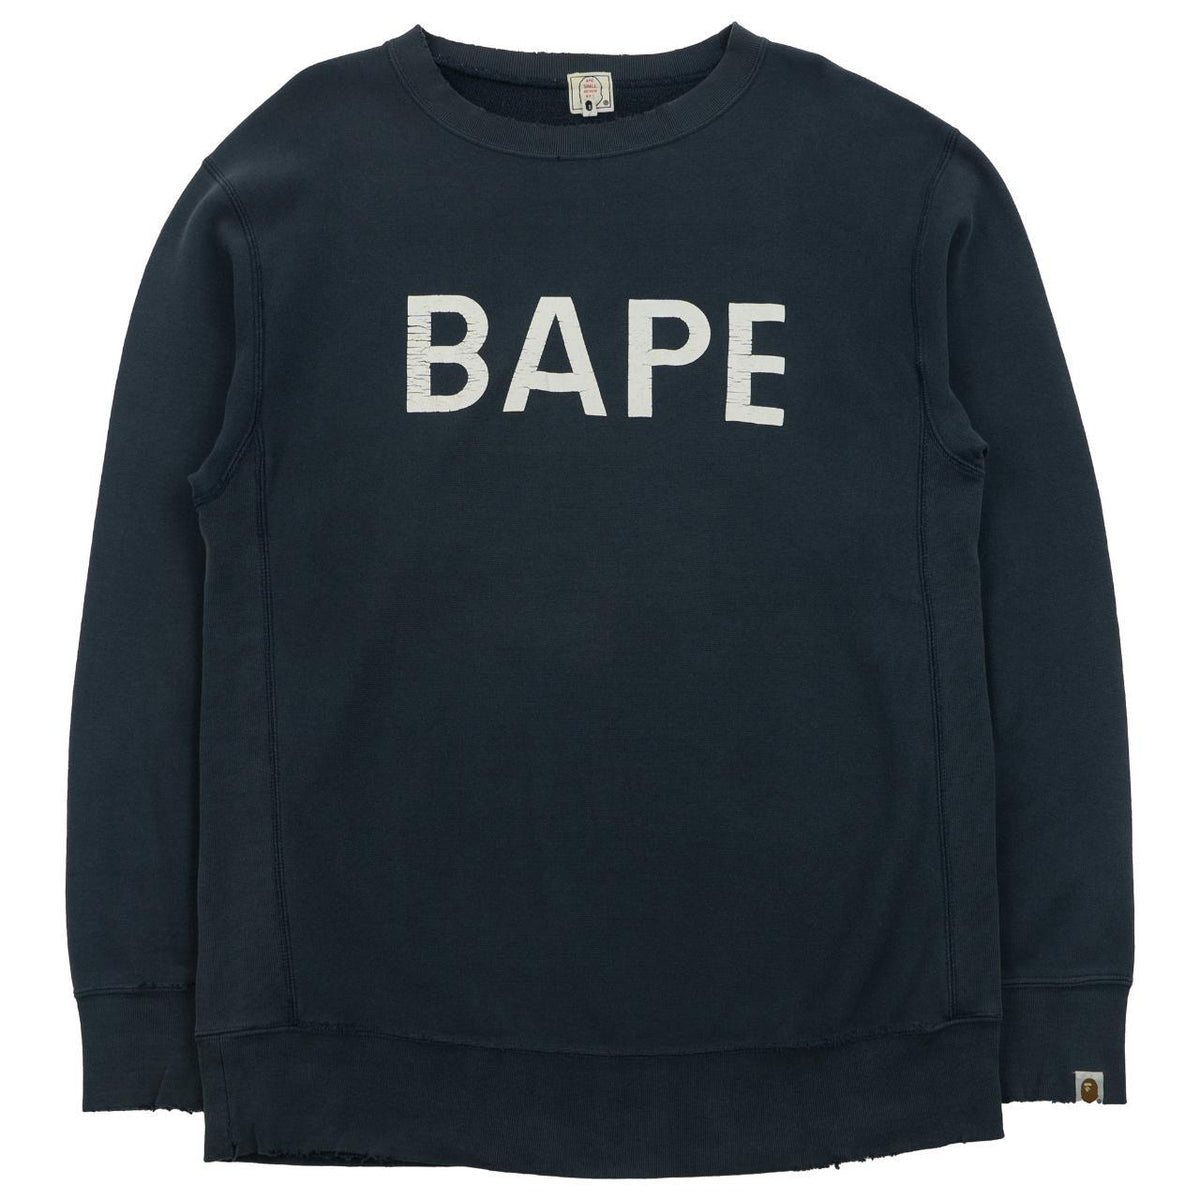 Vintage Bape Spellout Sweatshirt Size M